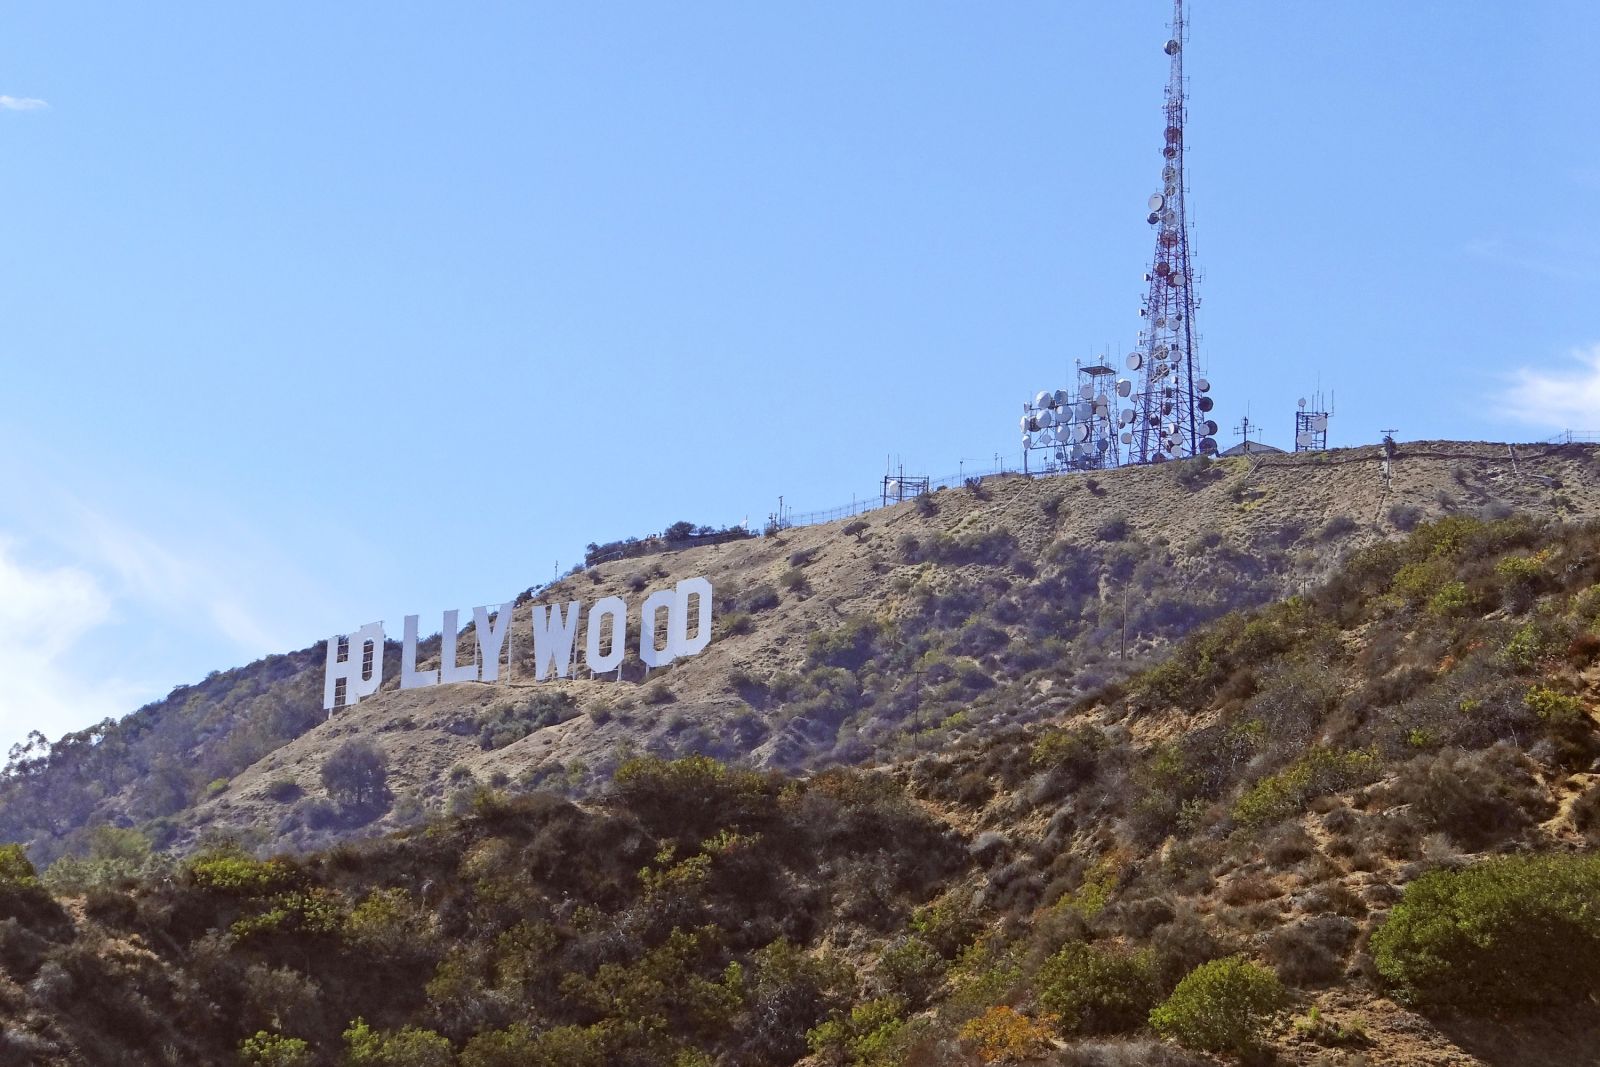 Das berühmte Wahrzeichen in den Hollywood Hills